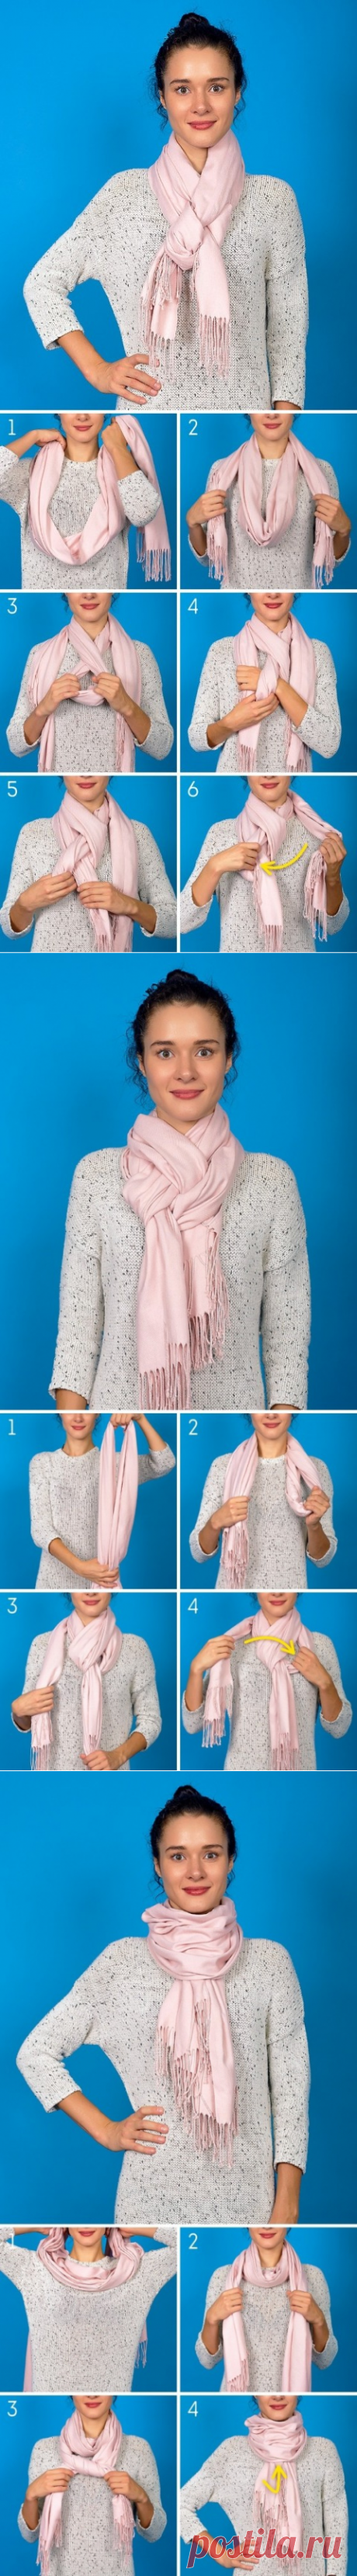 Украшаем осенний образ с помощью шарфа — 7 вариантов